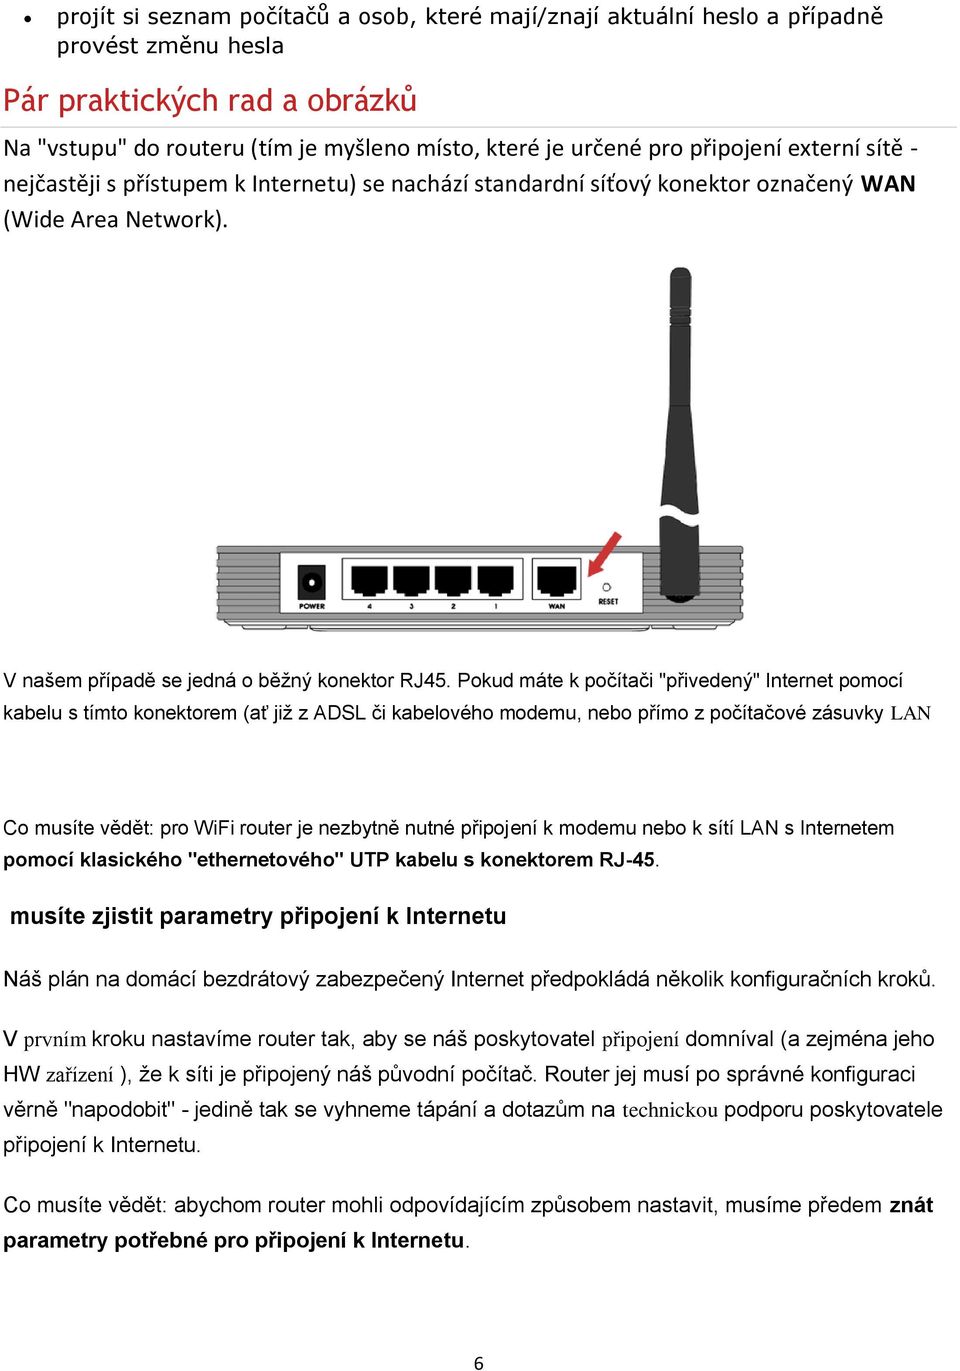 Pokud máte k počítači "přivedený" Internet pomocí kabelu s tímto konektorem (ať již z ADSL či kabelového modemu, nebo přímo z počítačové zásuvky LAN Co musíte vědět: pro WiFi router je nezbytně nutné